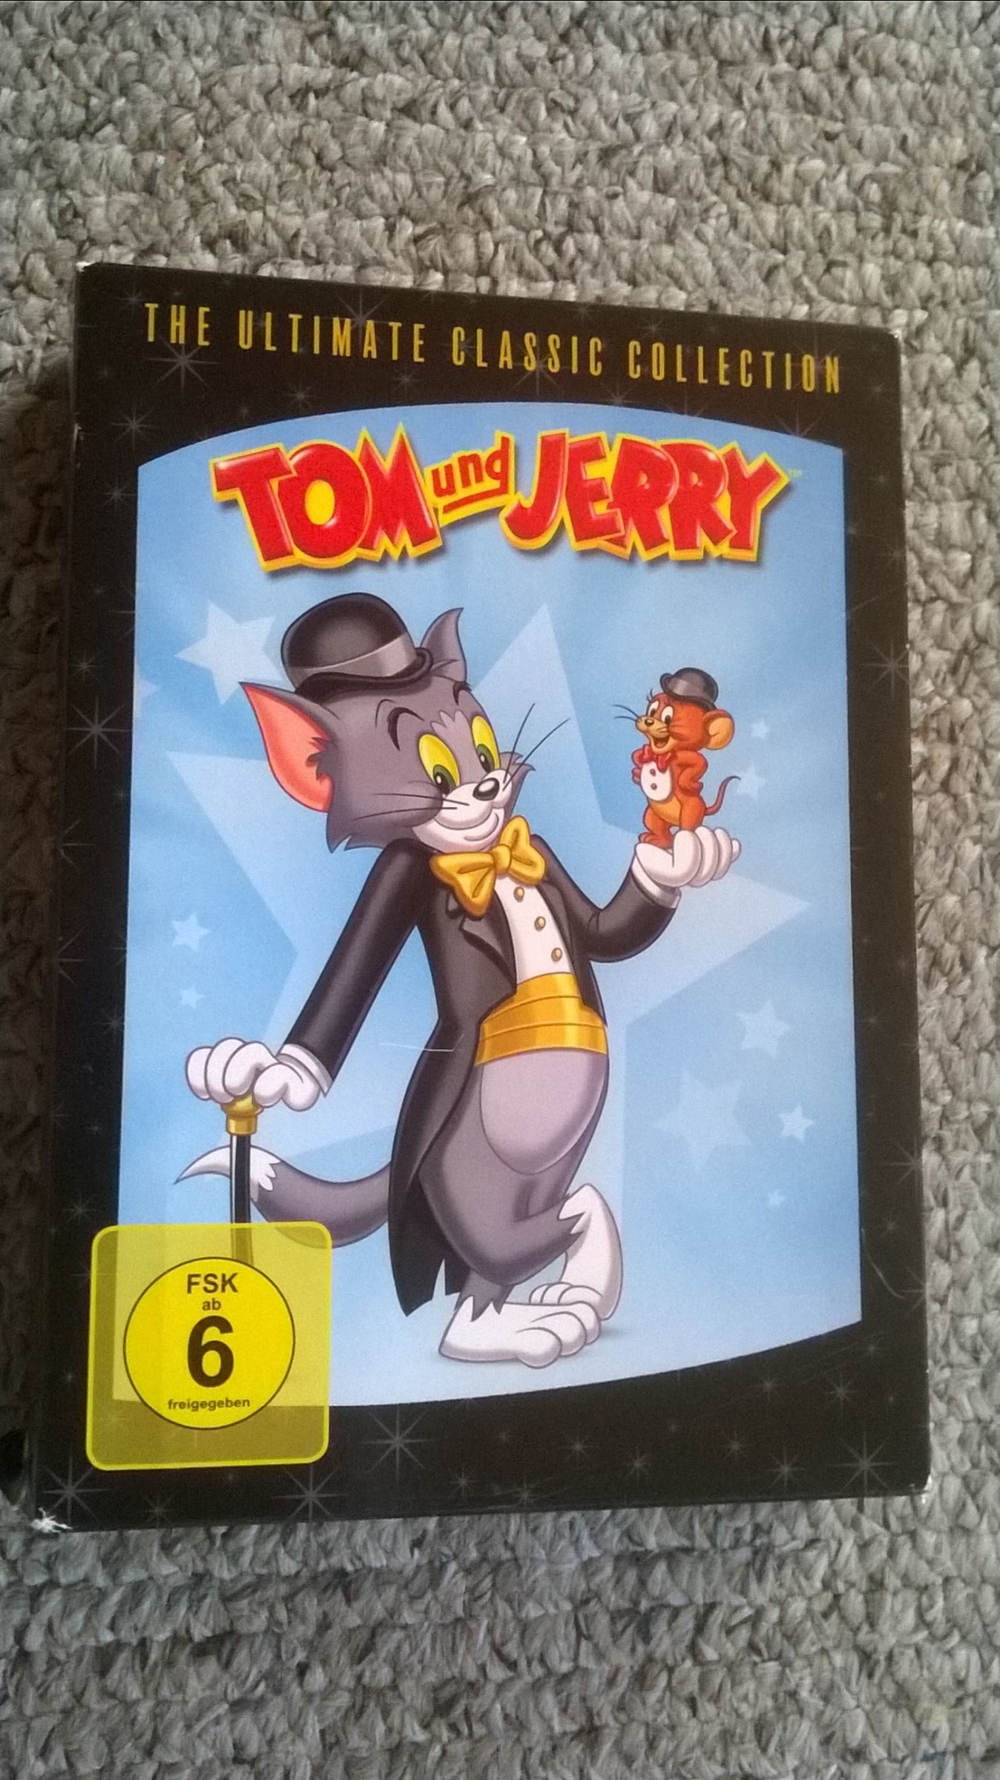 Tom und Jerry - The Ultimate Classic Collection [12 DVDs] - Deutsch/Englisch/Spanisch/Italienisch/Tü